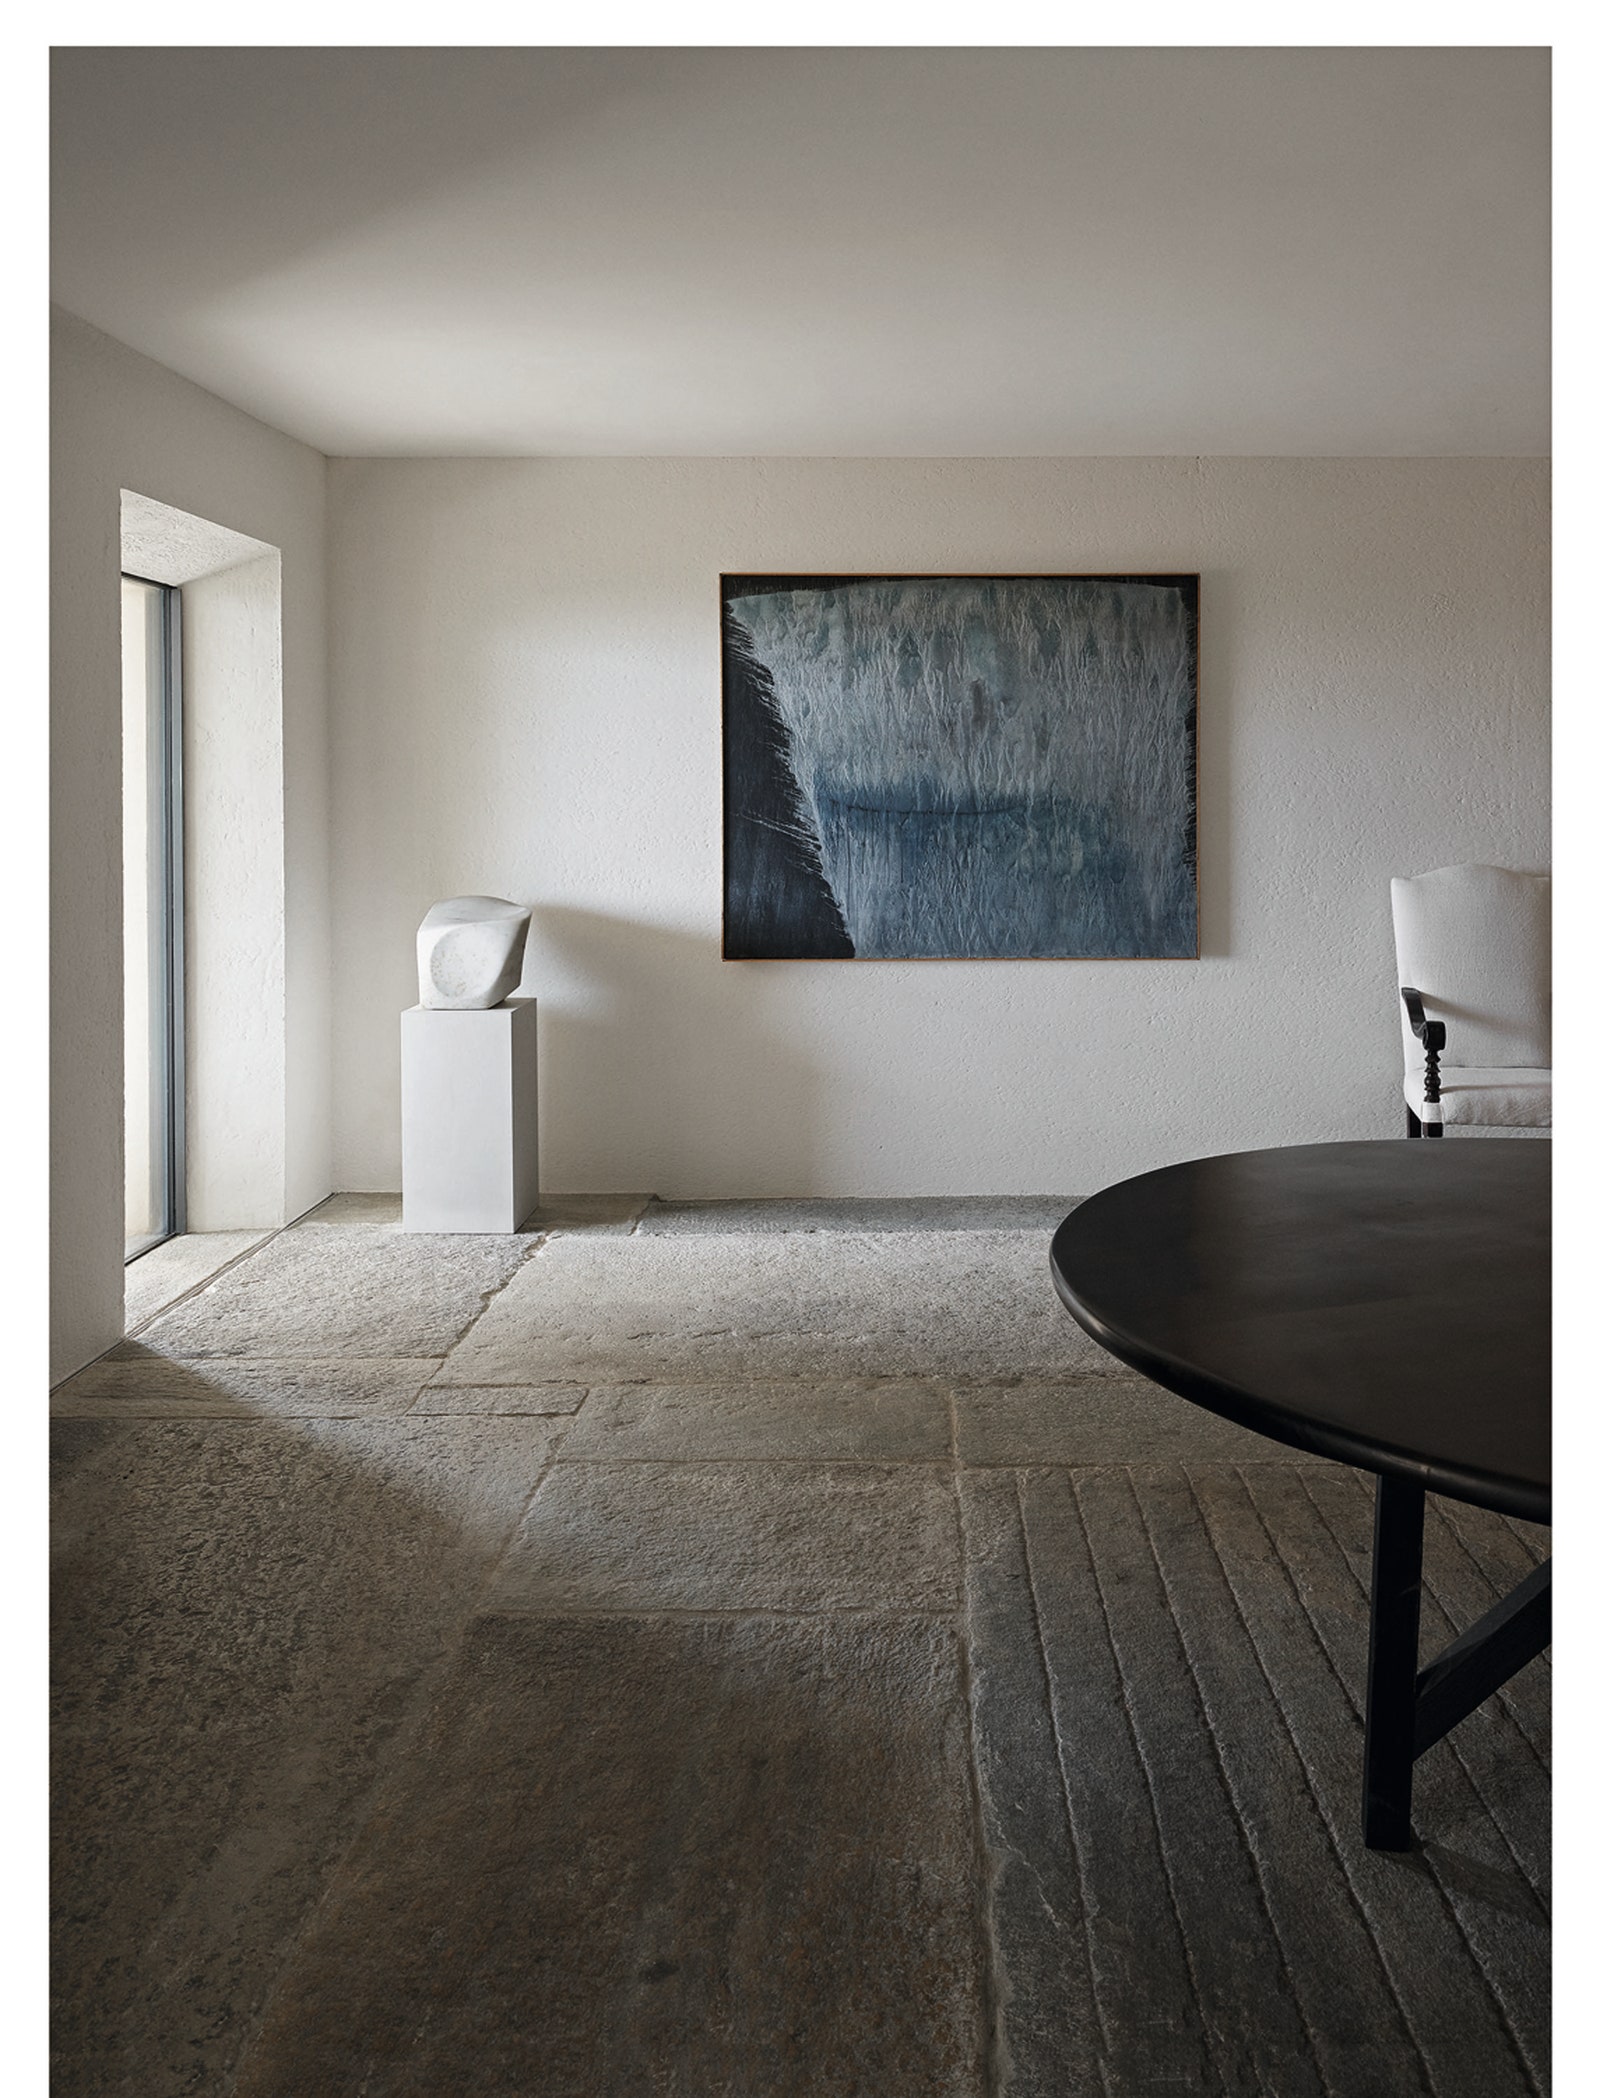 Фрагмент интерьера в доме на Ибице по проекту Акселя Вервордта.